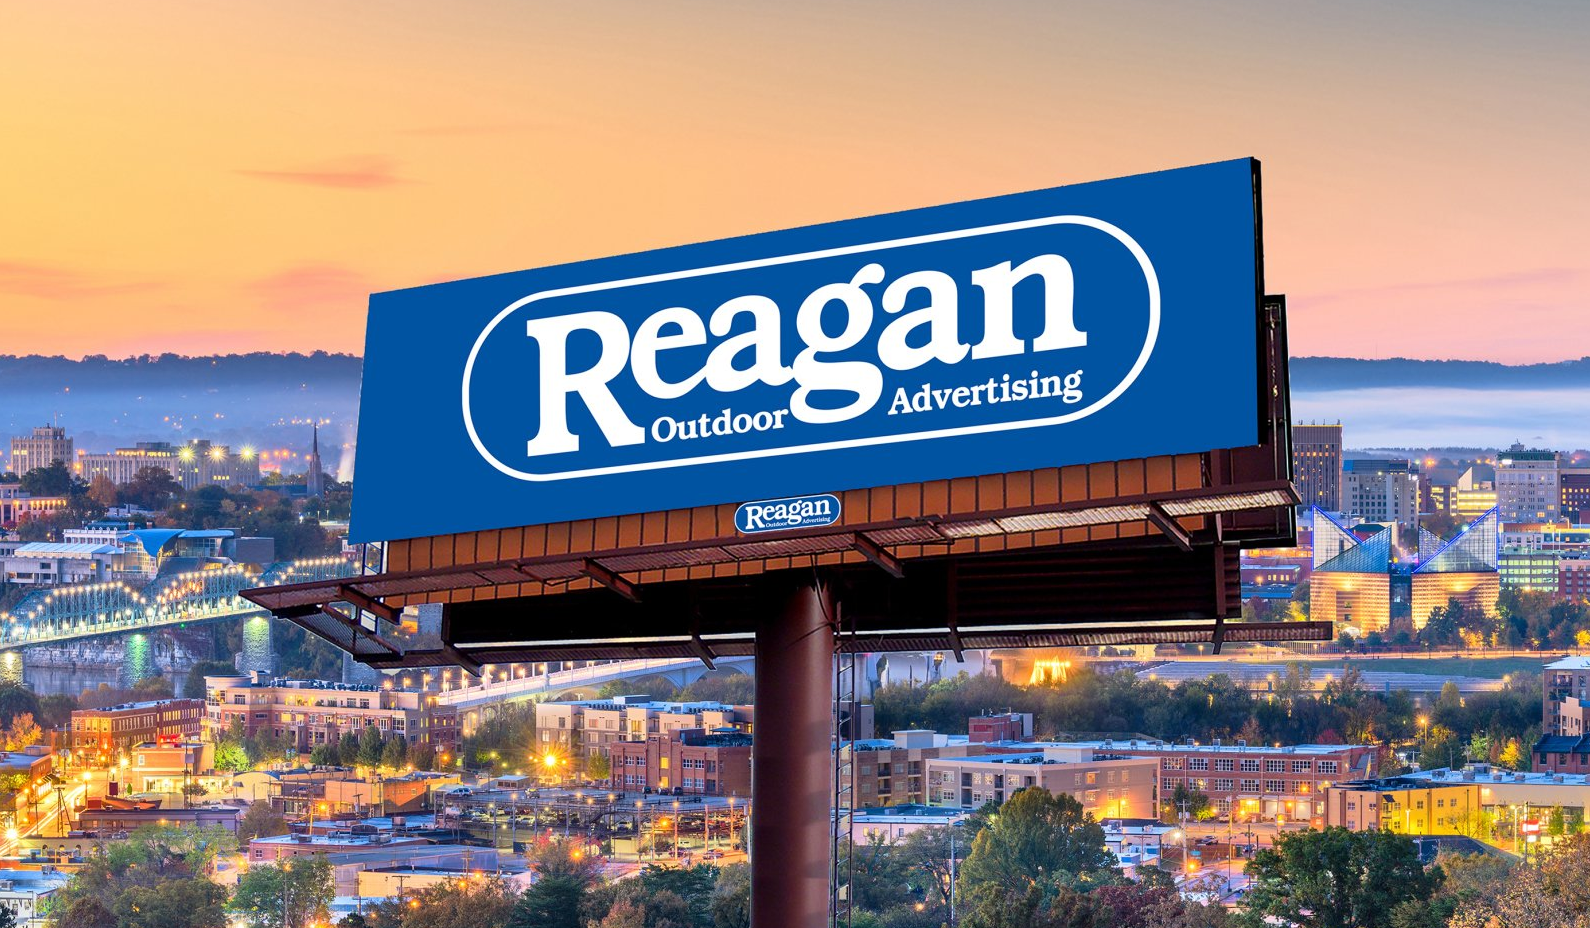 Reagan Advertising